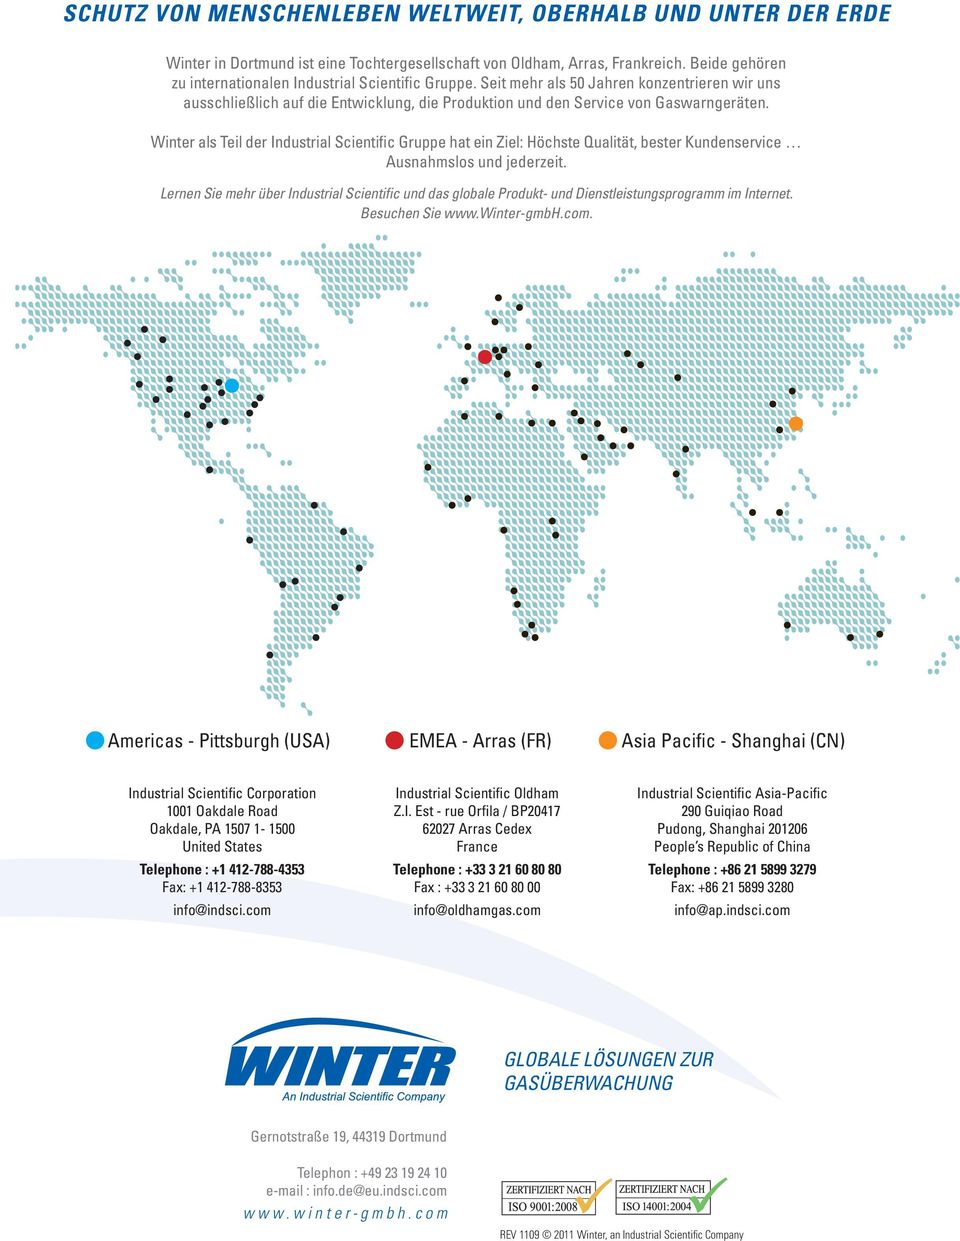 Winter als Teil der Industrial Scientific Gruppe hat ein Ziel: Höchste Qualität, bester Kundenservice Ausnahmslos und jederzeit.